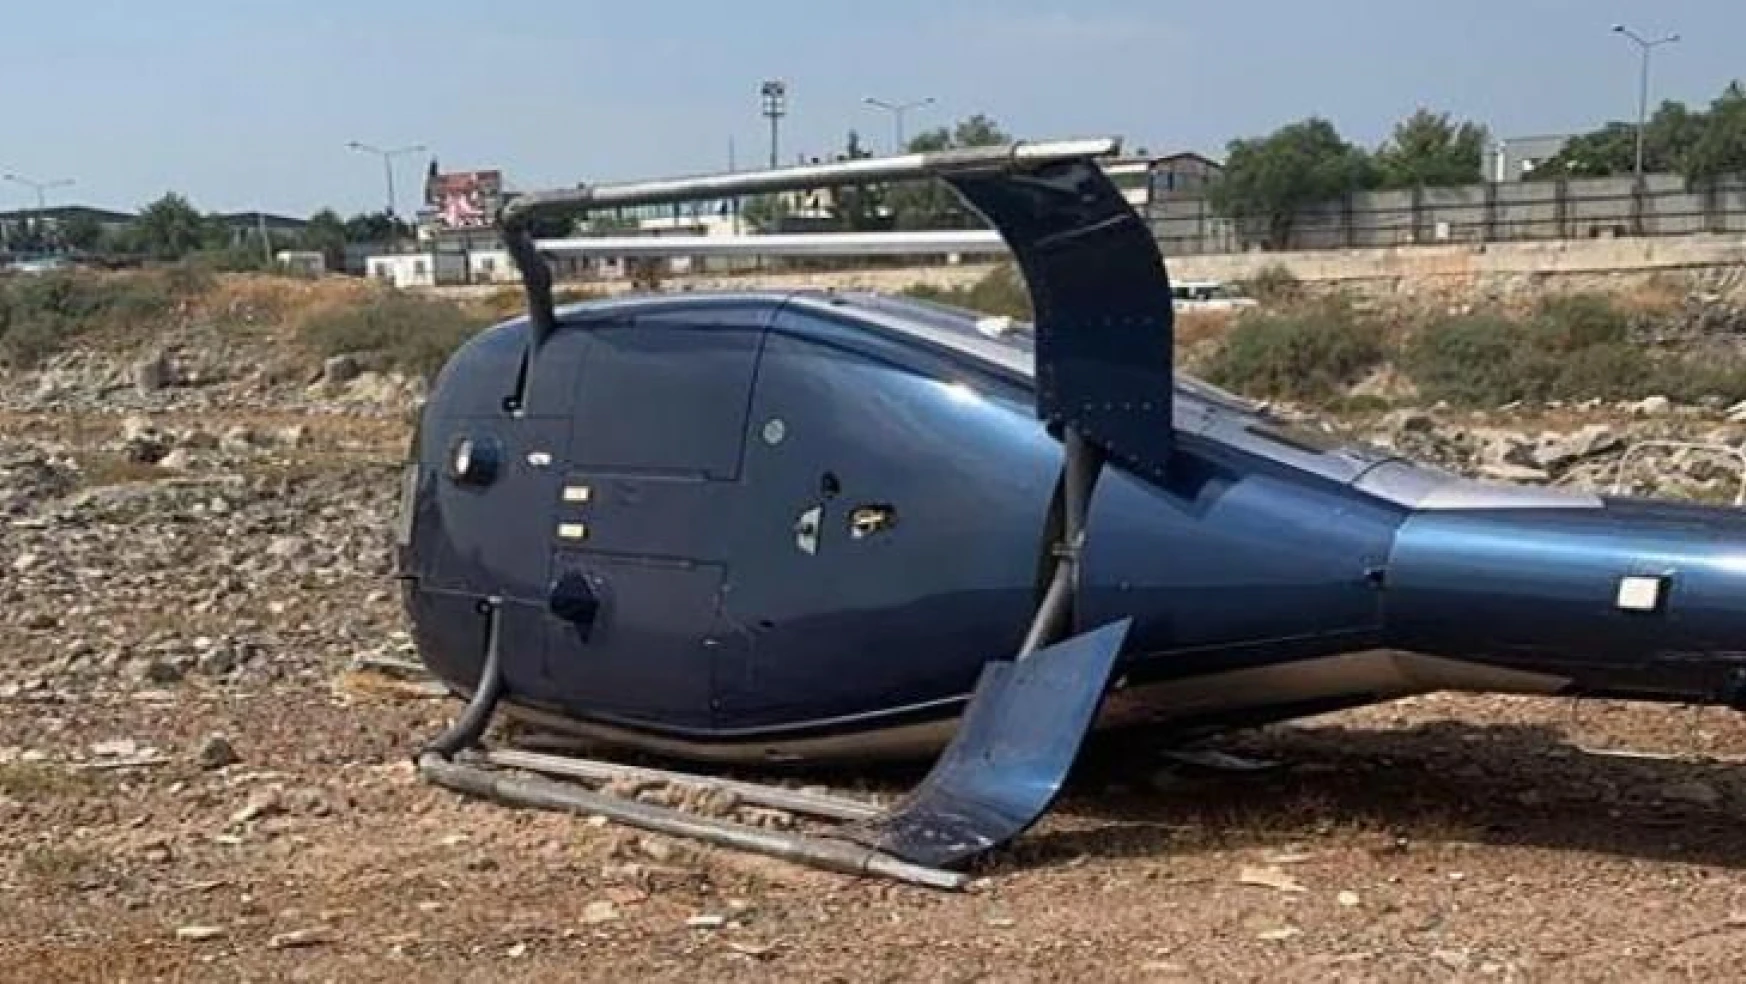 İzmir'in Çiğli ilçesinde sivil bir helikopter kalkış esnasında yan yattı. Olayda hafif yaralanan 2 kişinin tedbir amacıyla hastaneye kaldırıldığı öğrenildi.